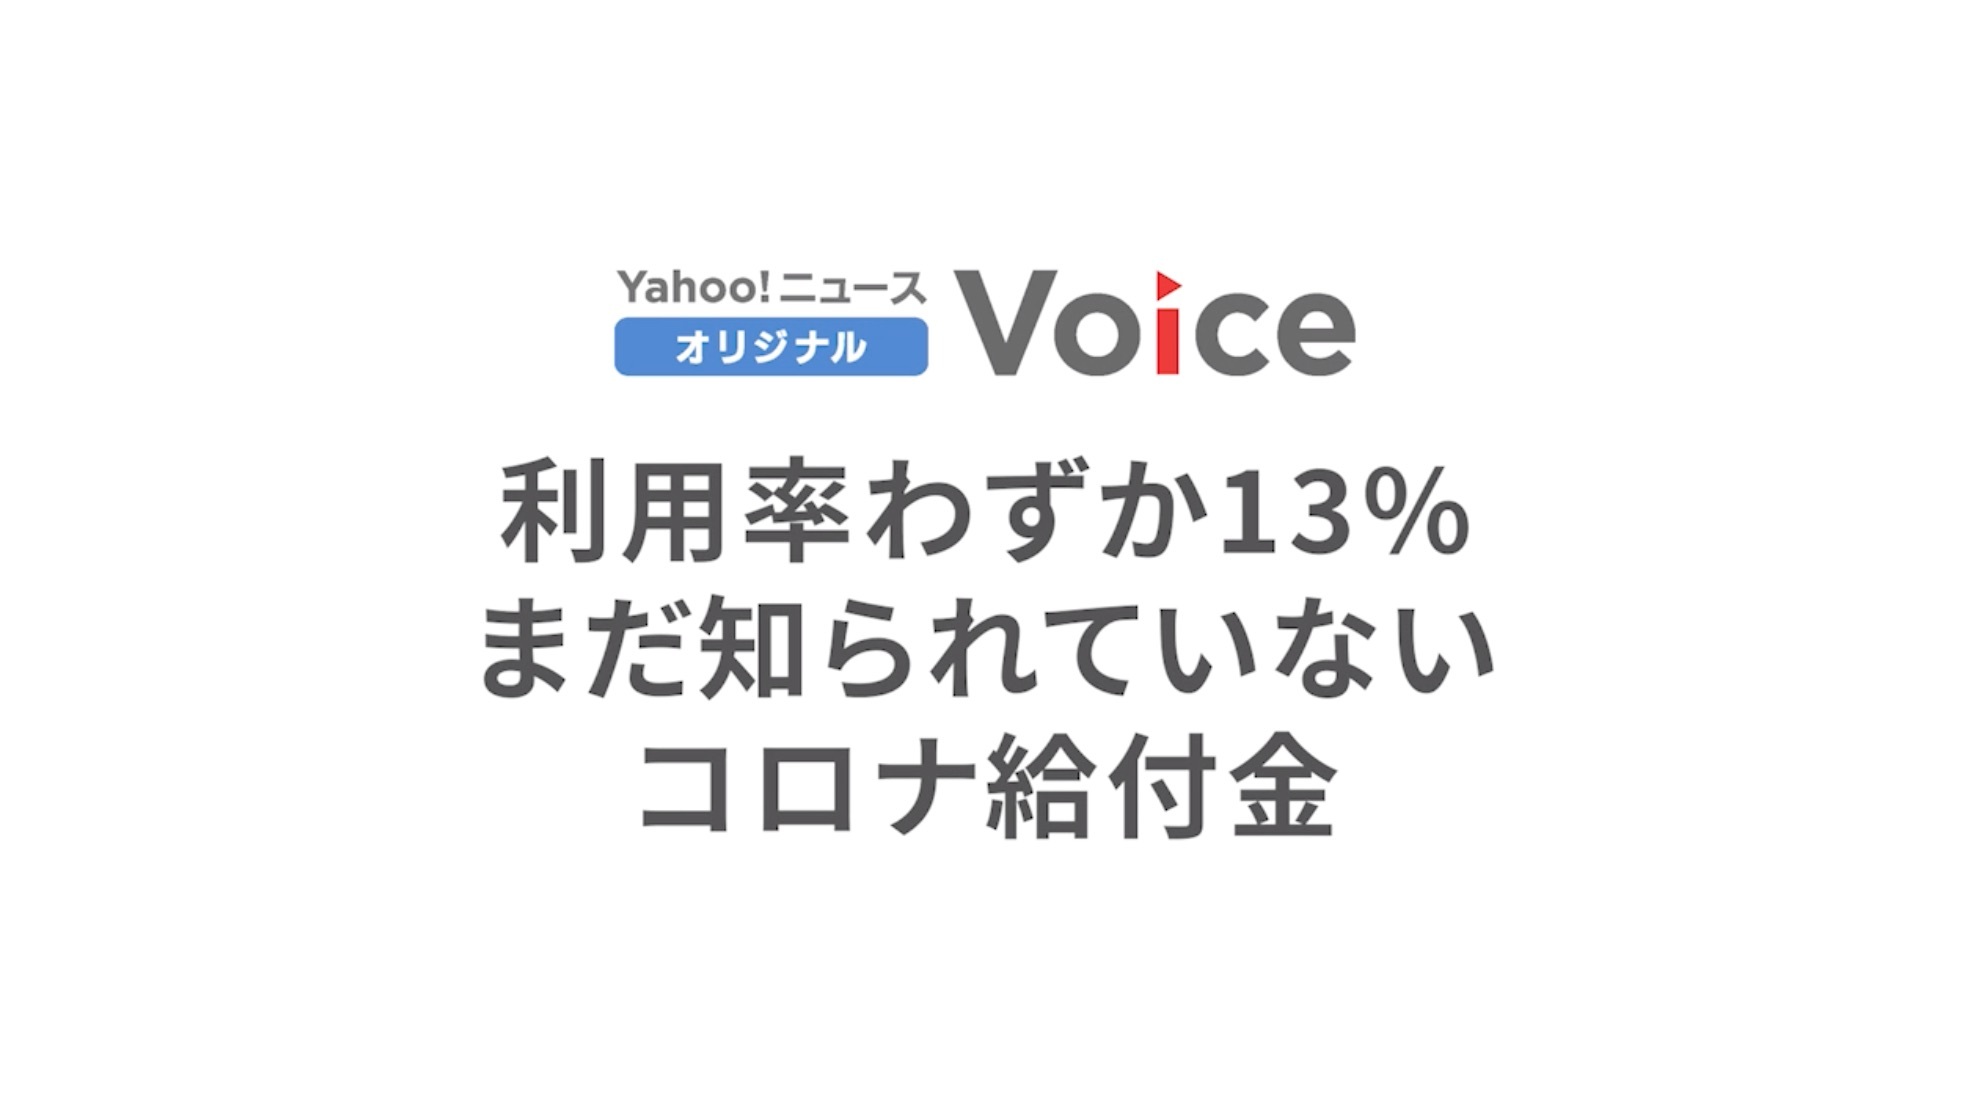 利用率わずか13% まだ知られていないコロナ給付金（Yahoo!ニュース オリジナル Voice）